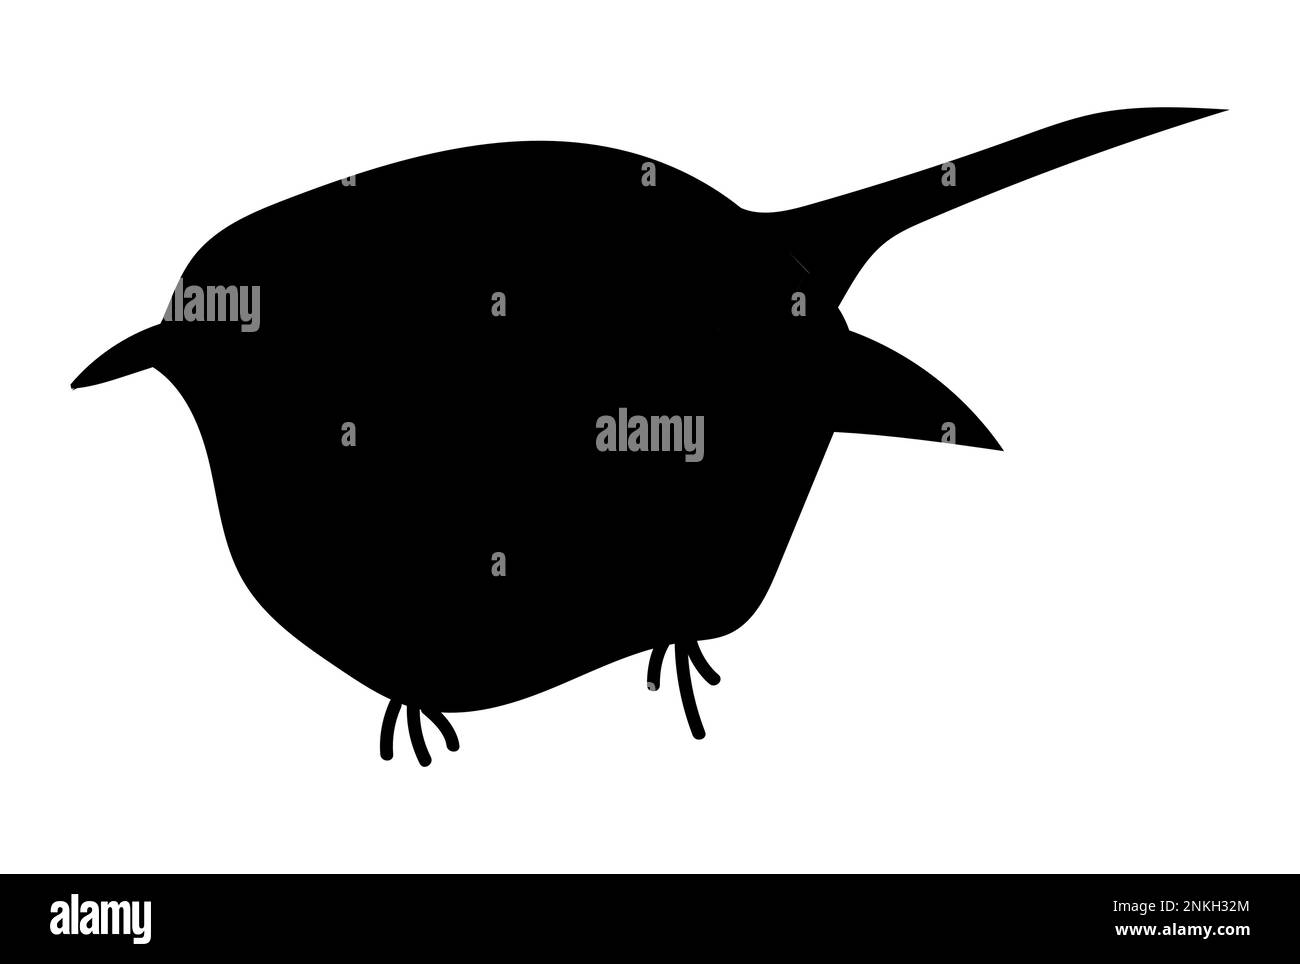 La silhouette degli uccelli sparrow. Design di carattere cartoon piatto. Icona dell'uccello, passero carino per il giorno del passero del mondo. Illustrazione vettoriale Illustrazione Vettoriale